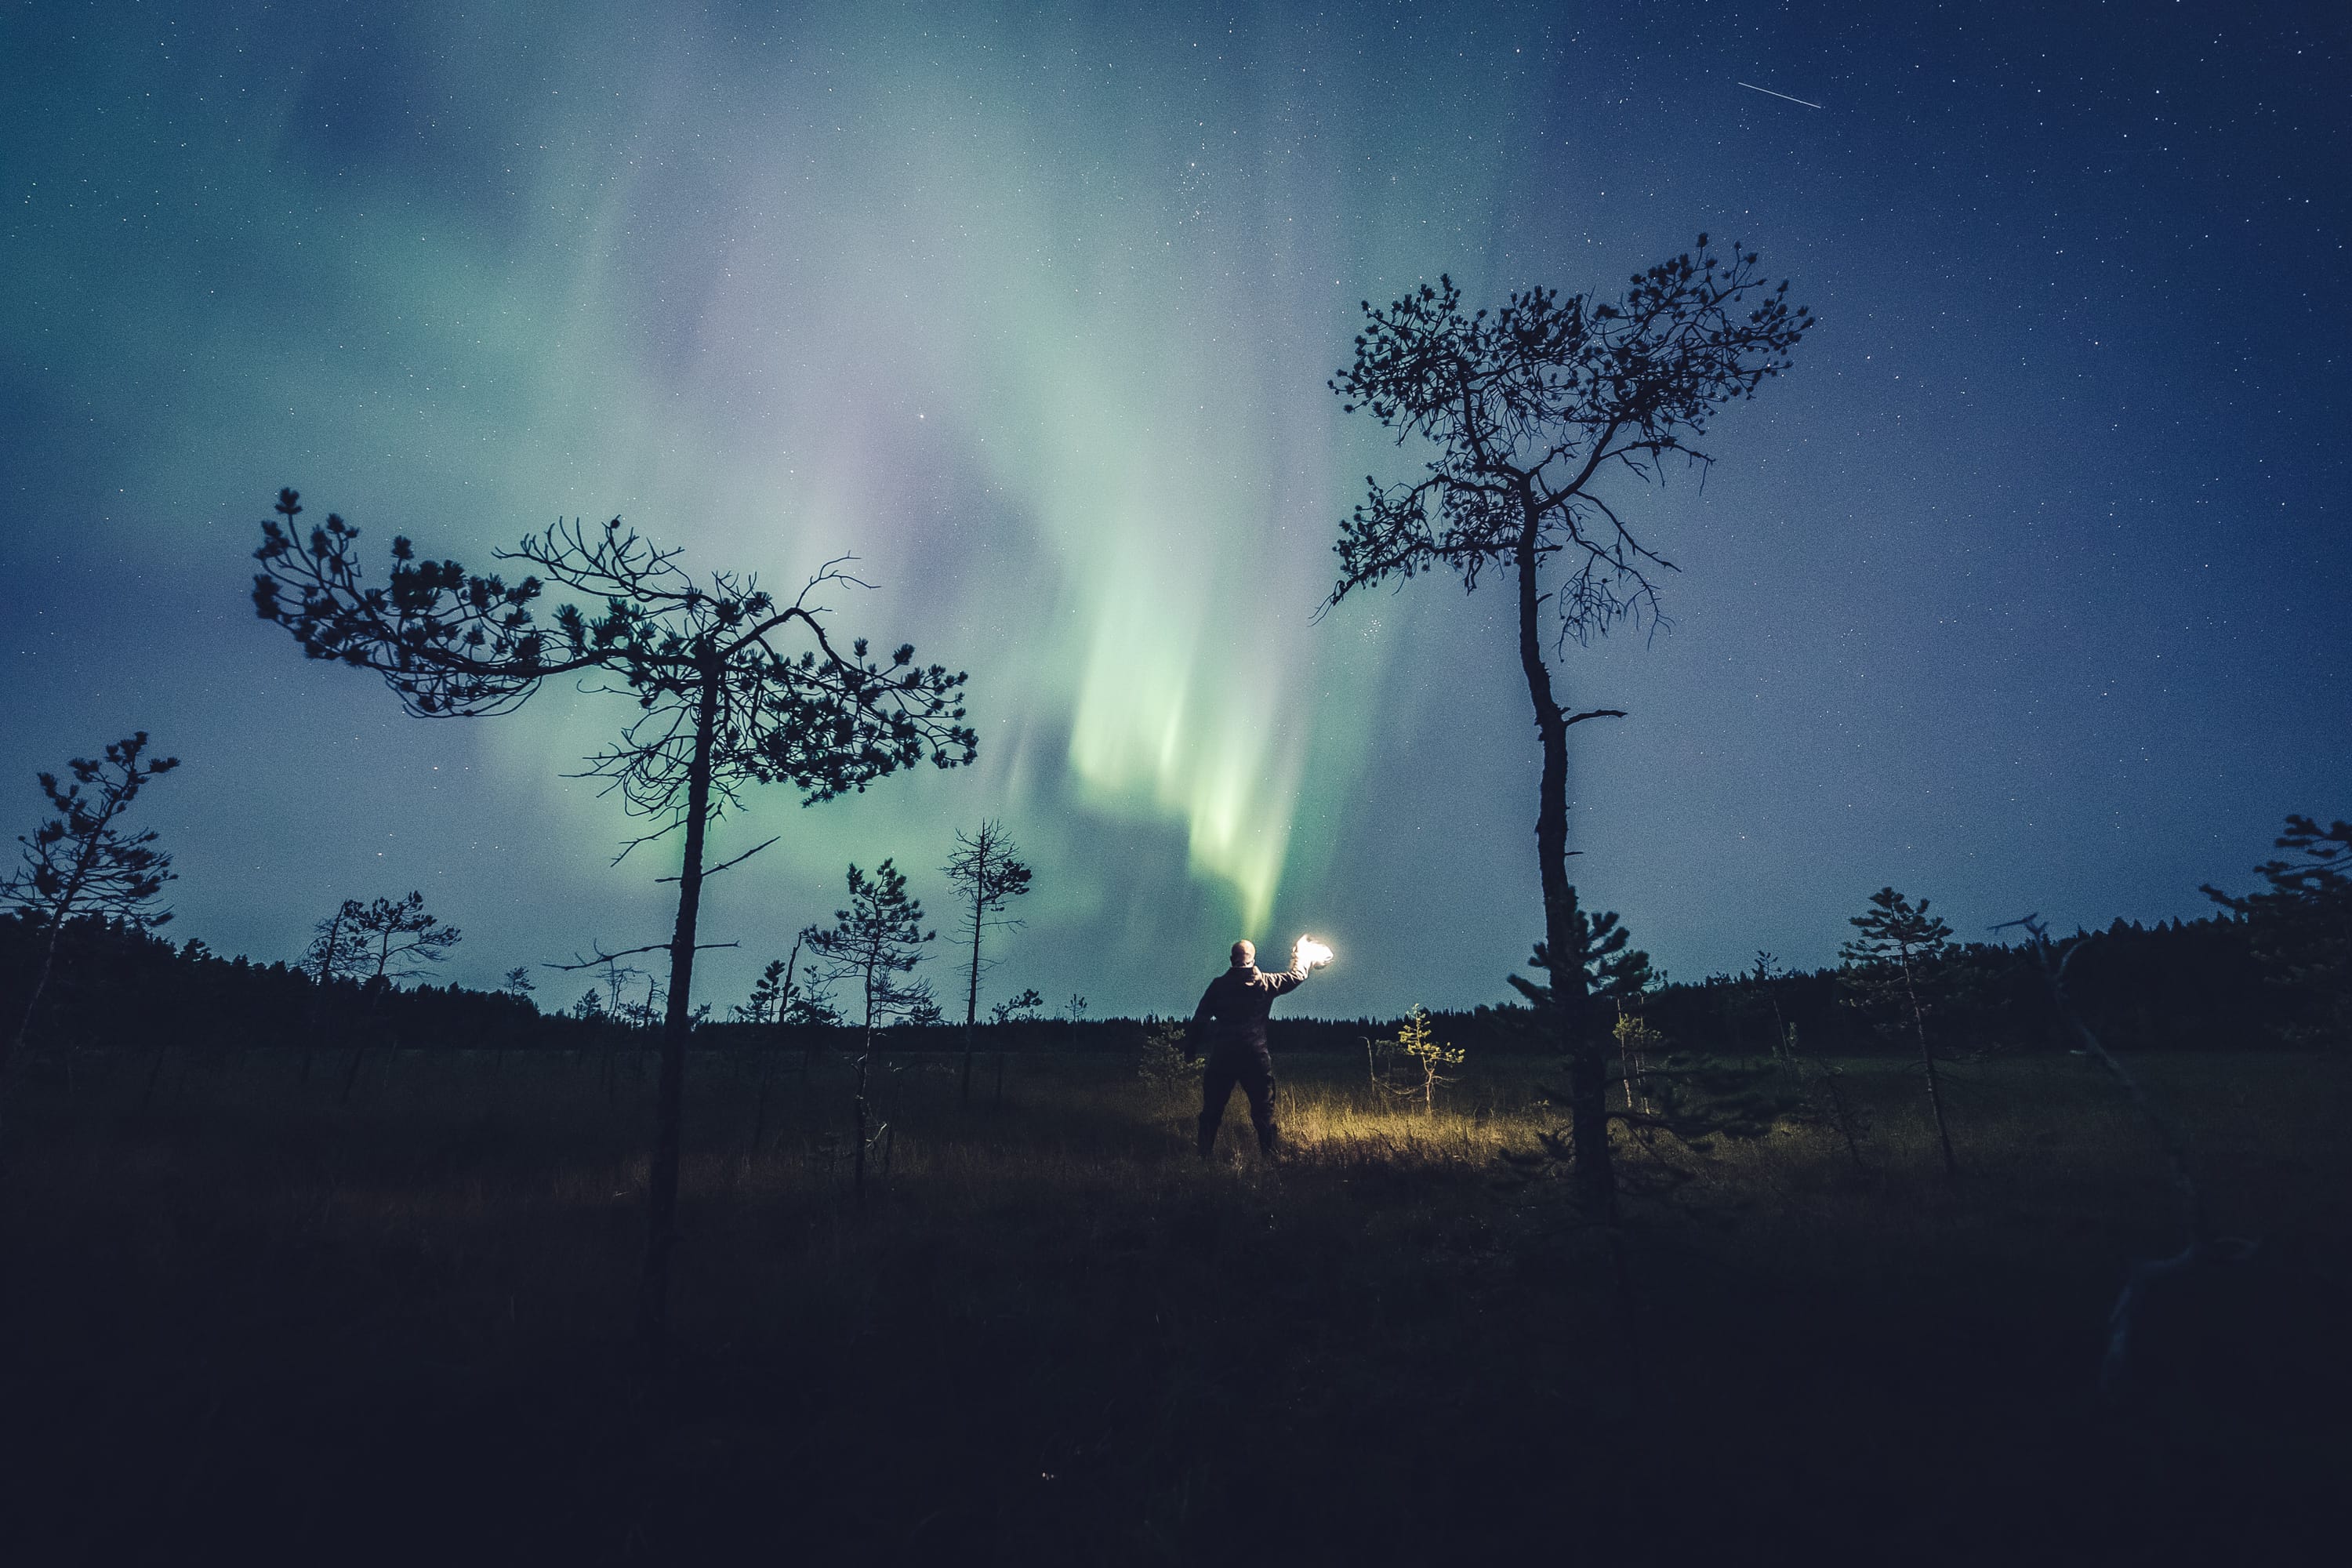 First aurora storm of season 2019-2020 in Rovaniemi Lapland